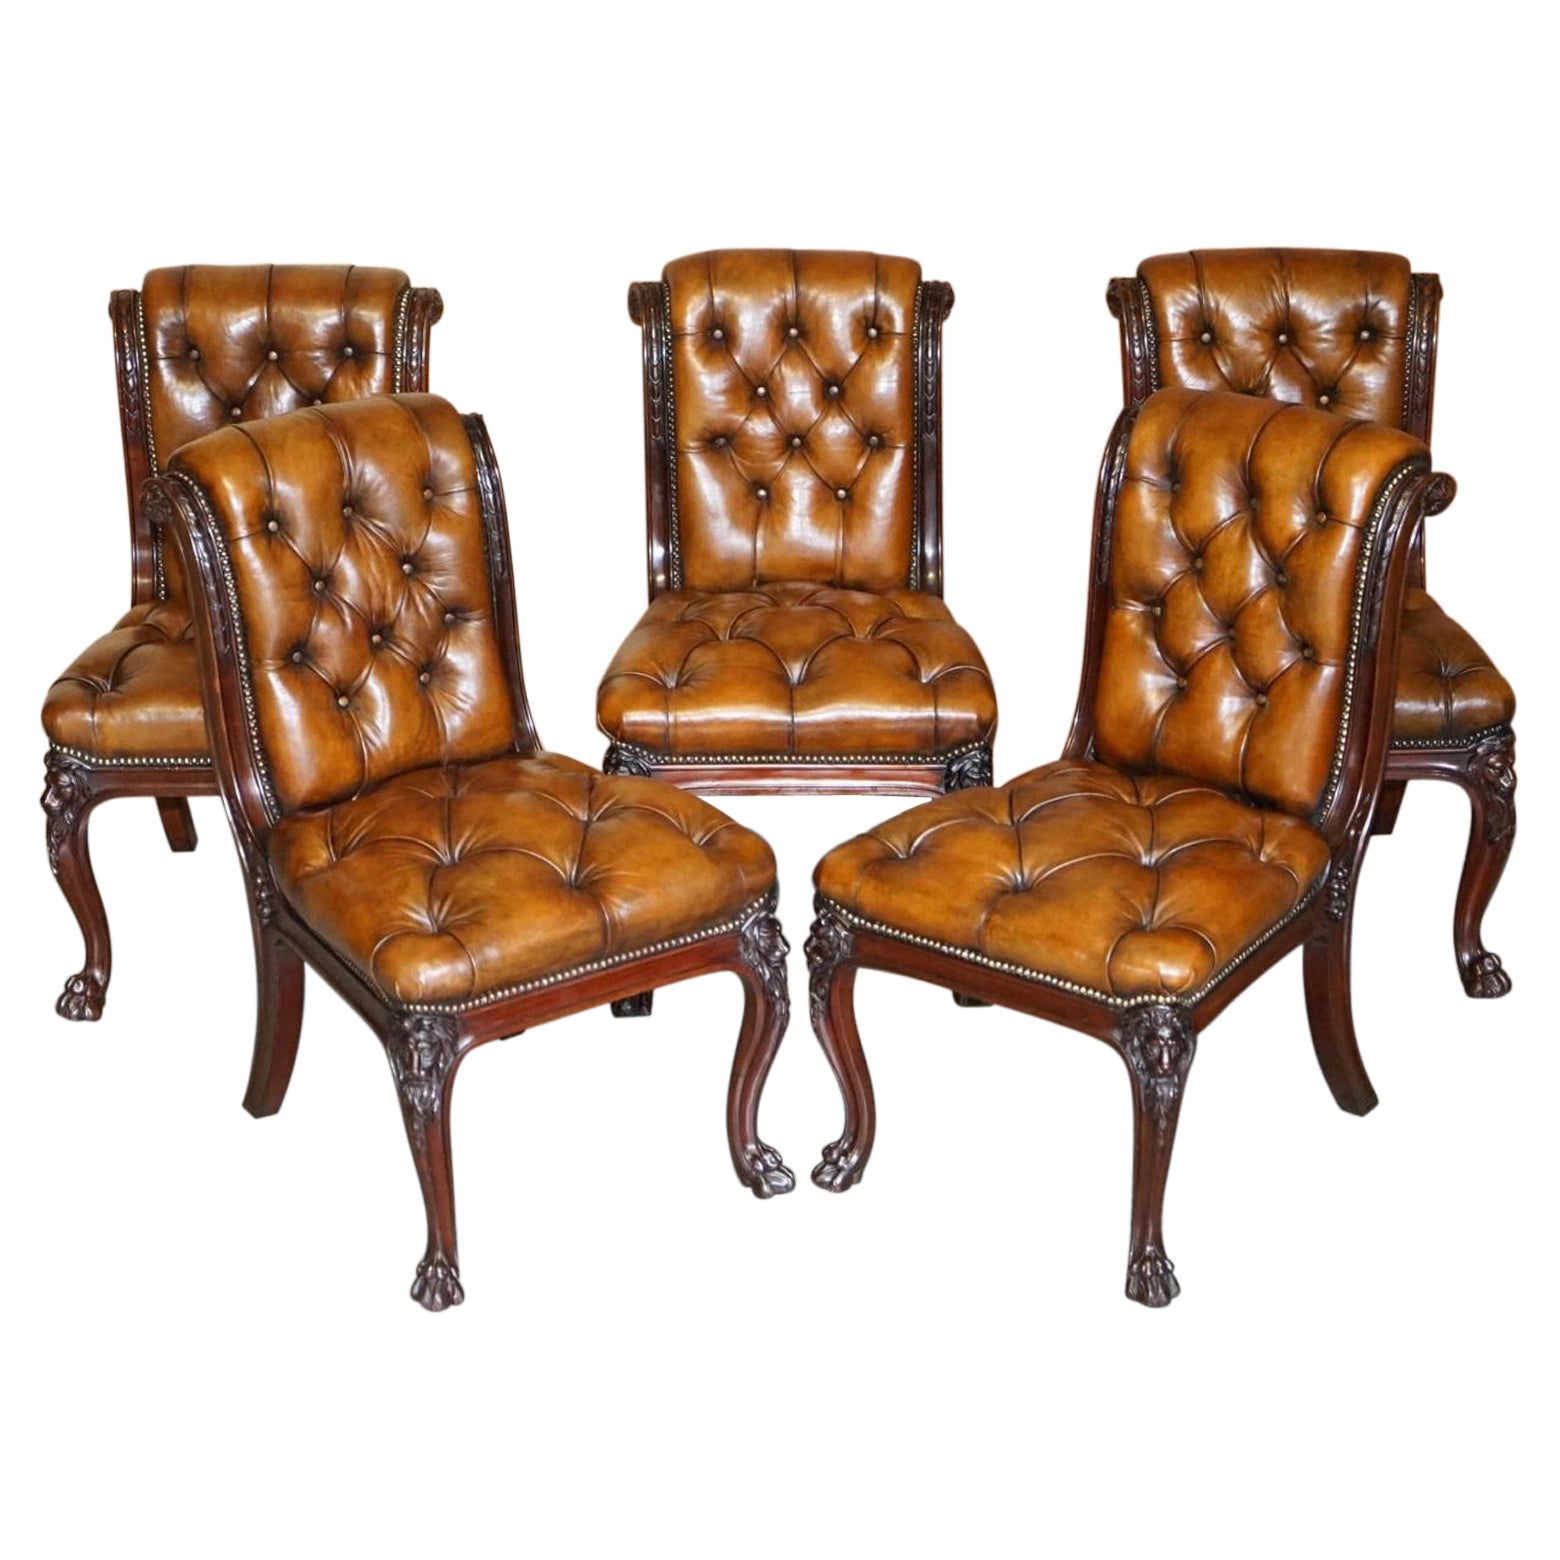 Hindley & Sons chaises de salle à manger en cuir marron Chesterfield sculpté en forme de lion, datant d'environ 1845